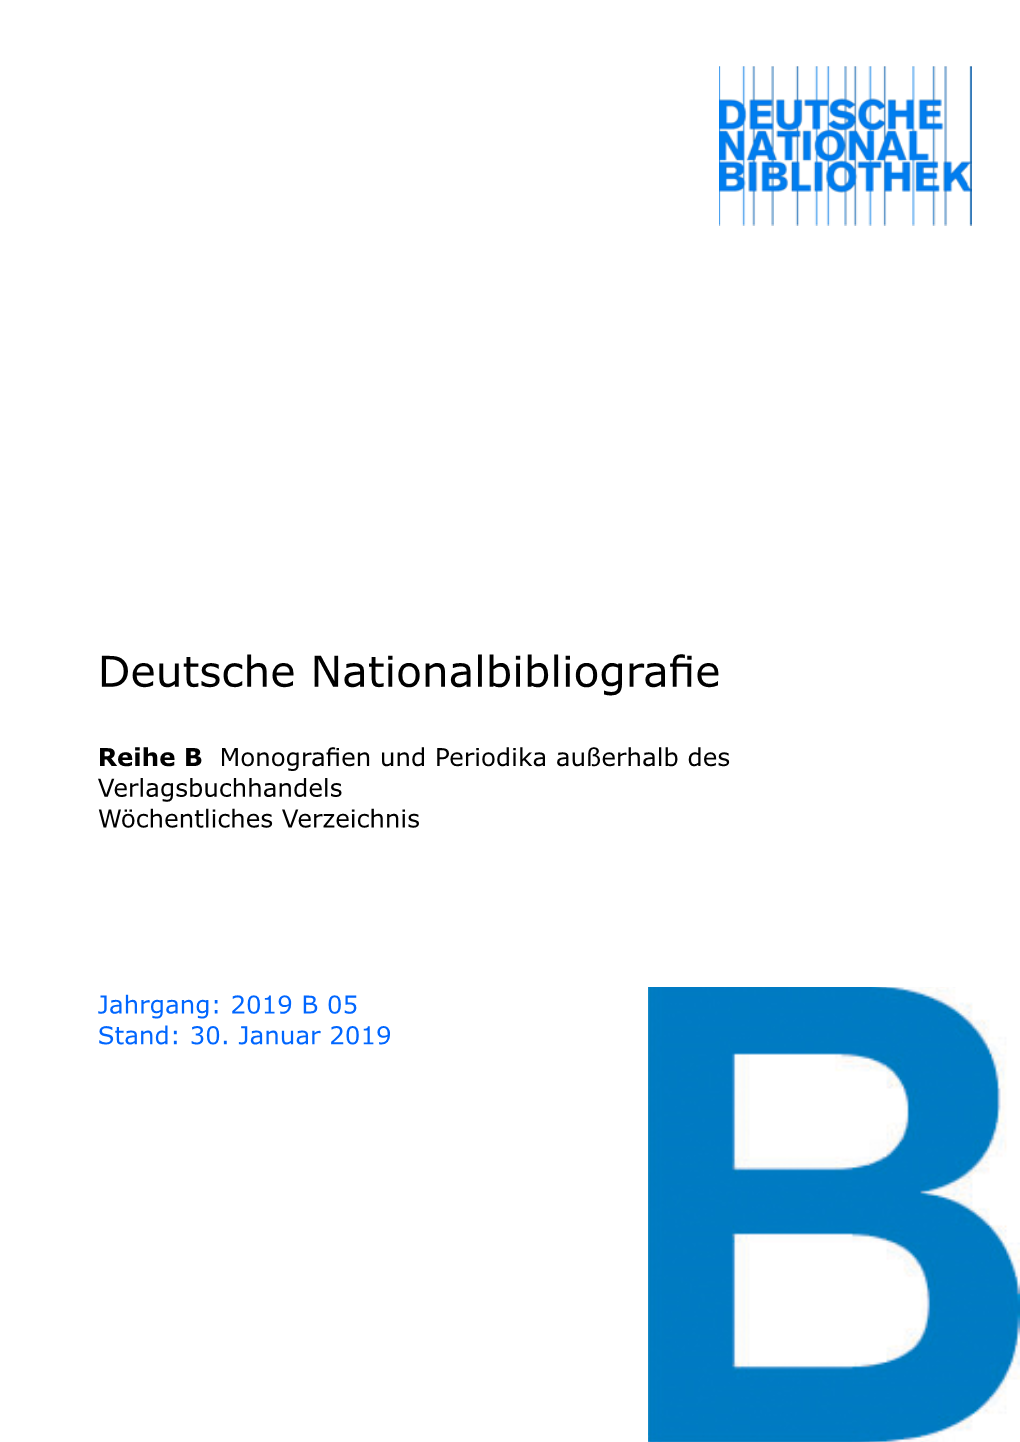 Deutsche Nationalbibliografie 2019 B 05